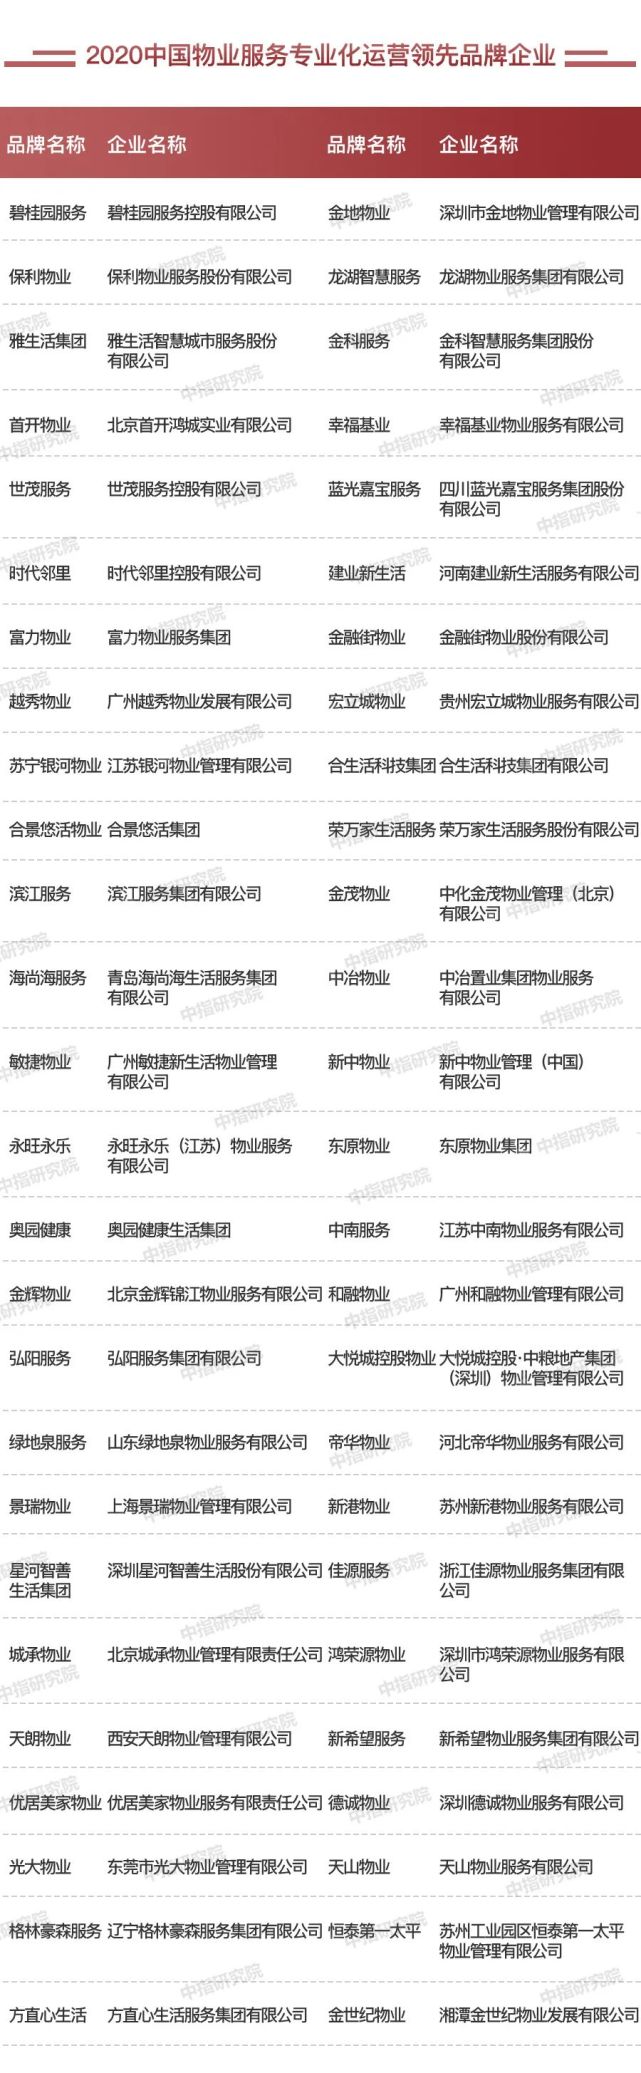 螺丝刀品牌排行_房地产代理公司排名(2020中国房地产服务品牌排行榜)(2)